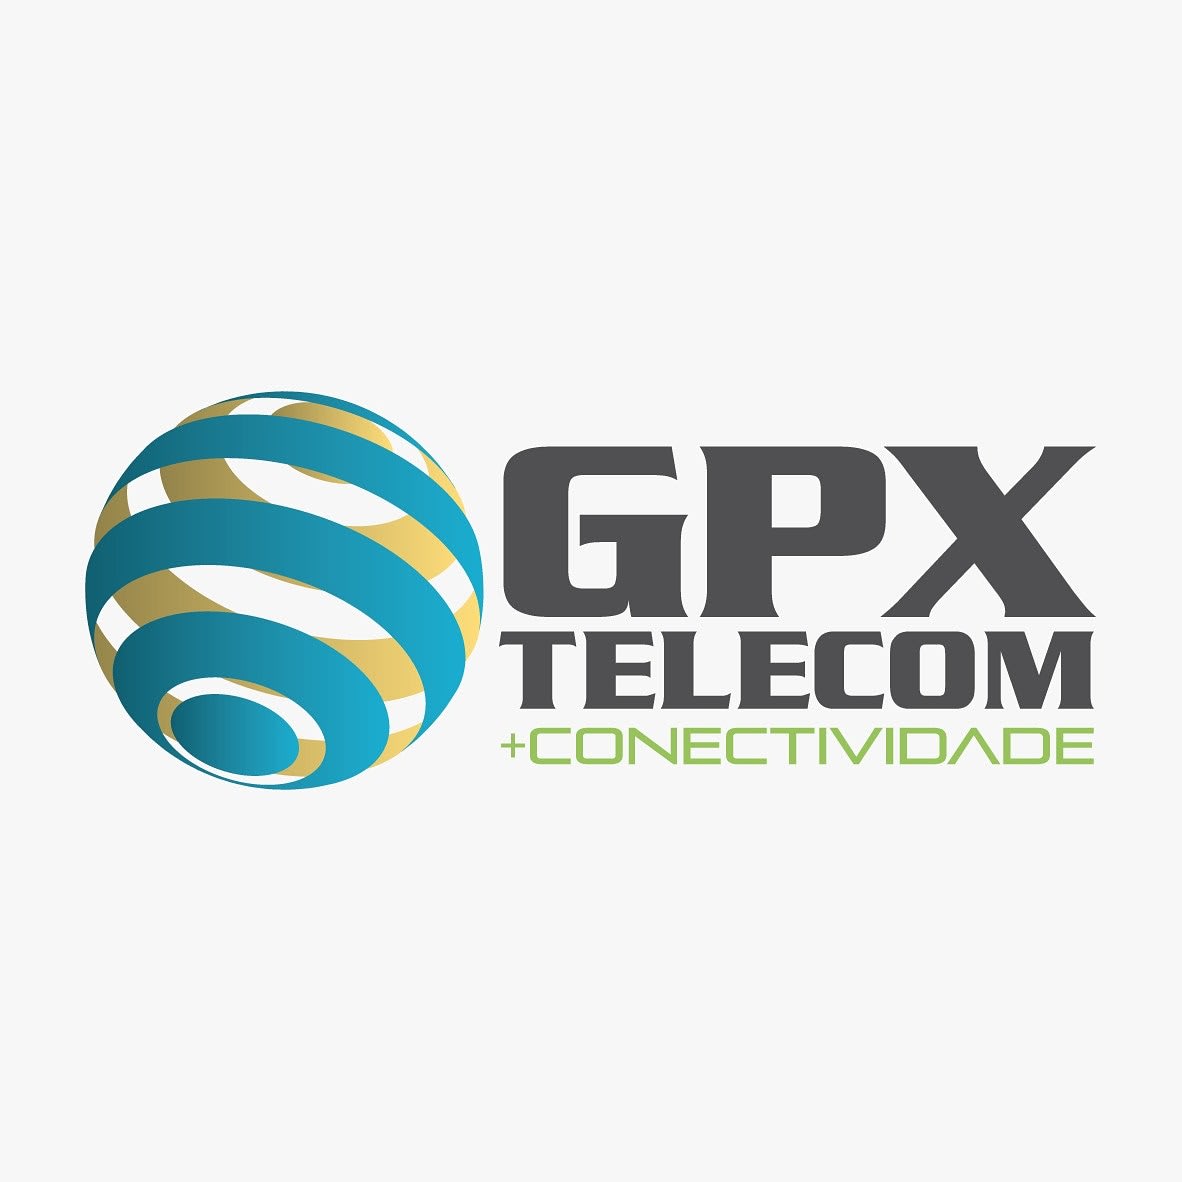 GPX Telecom